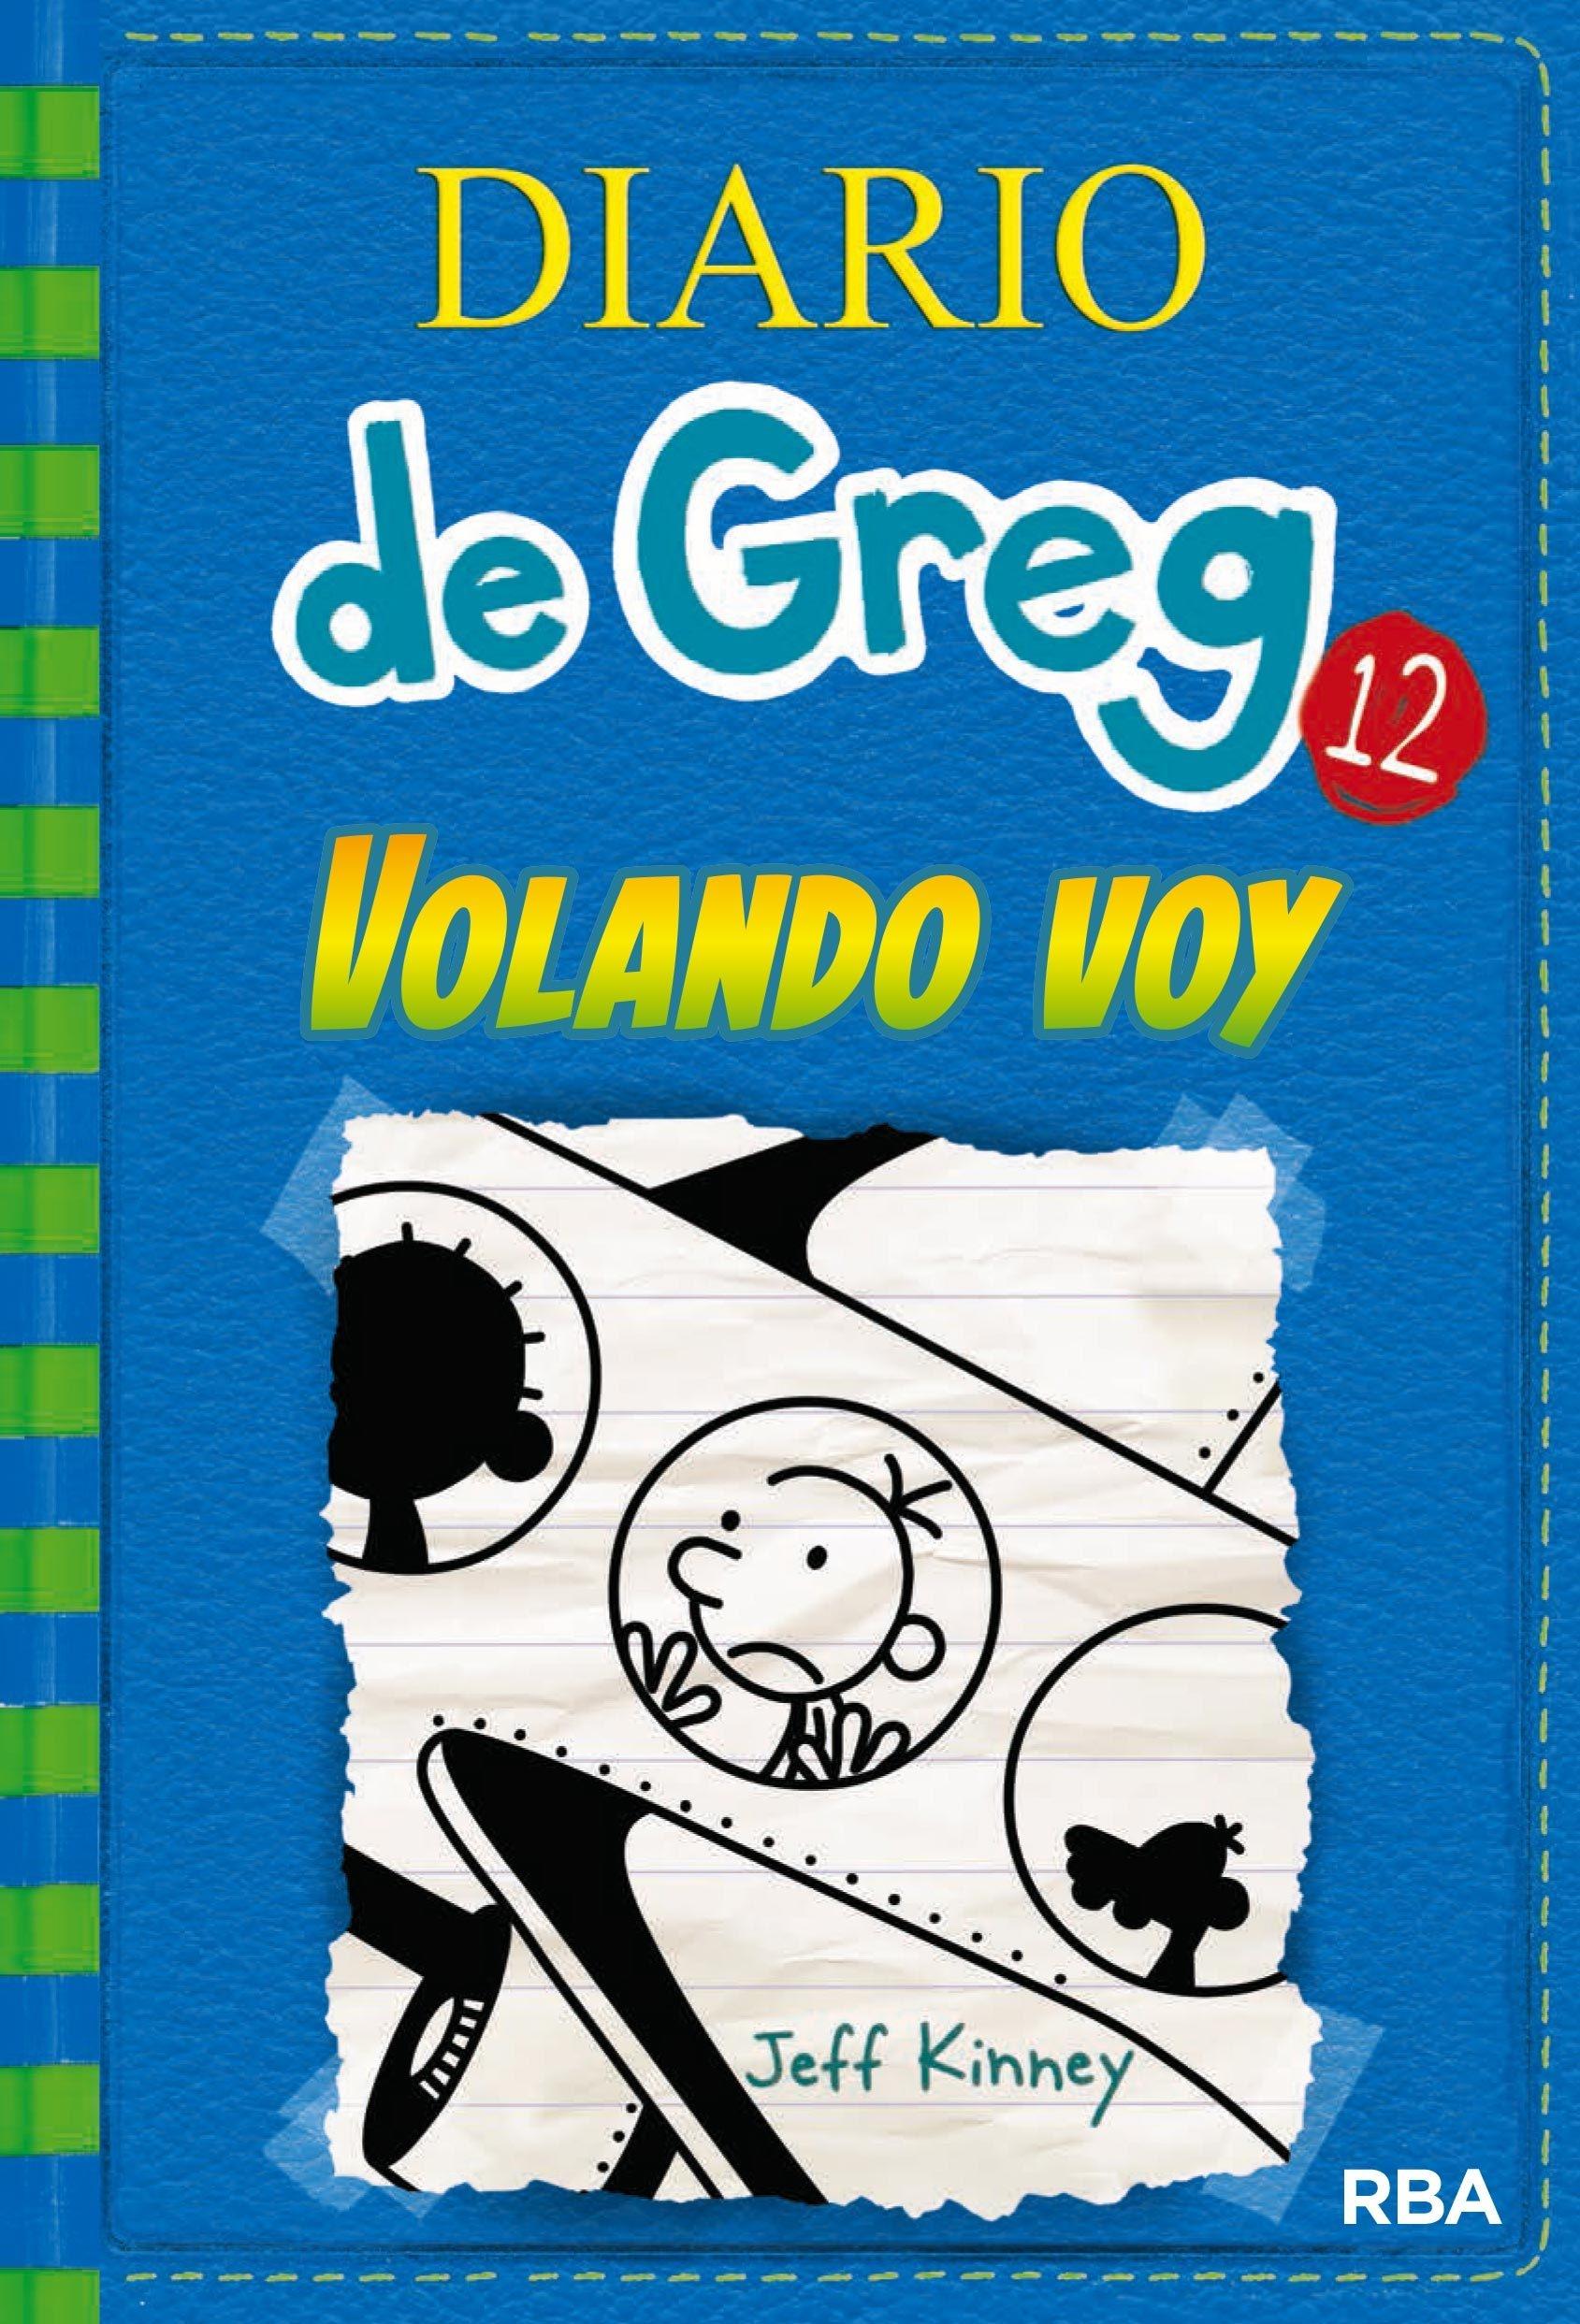 Diario de Greg 12 "Volando Voy"